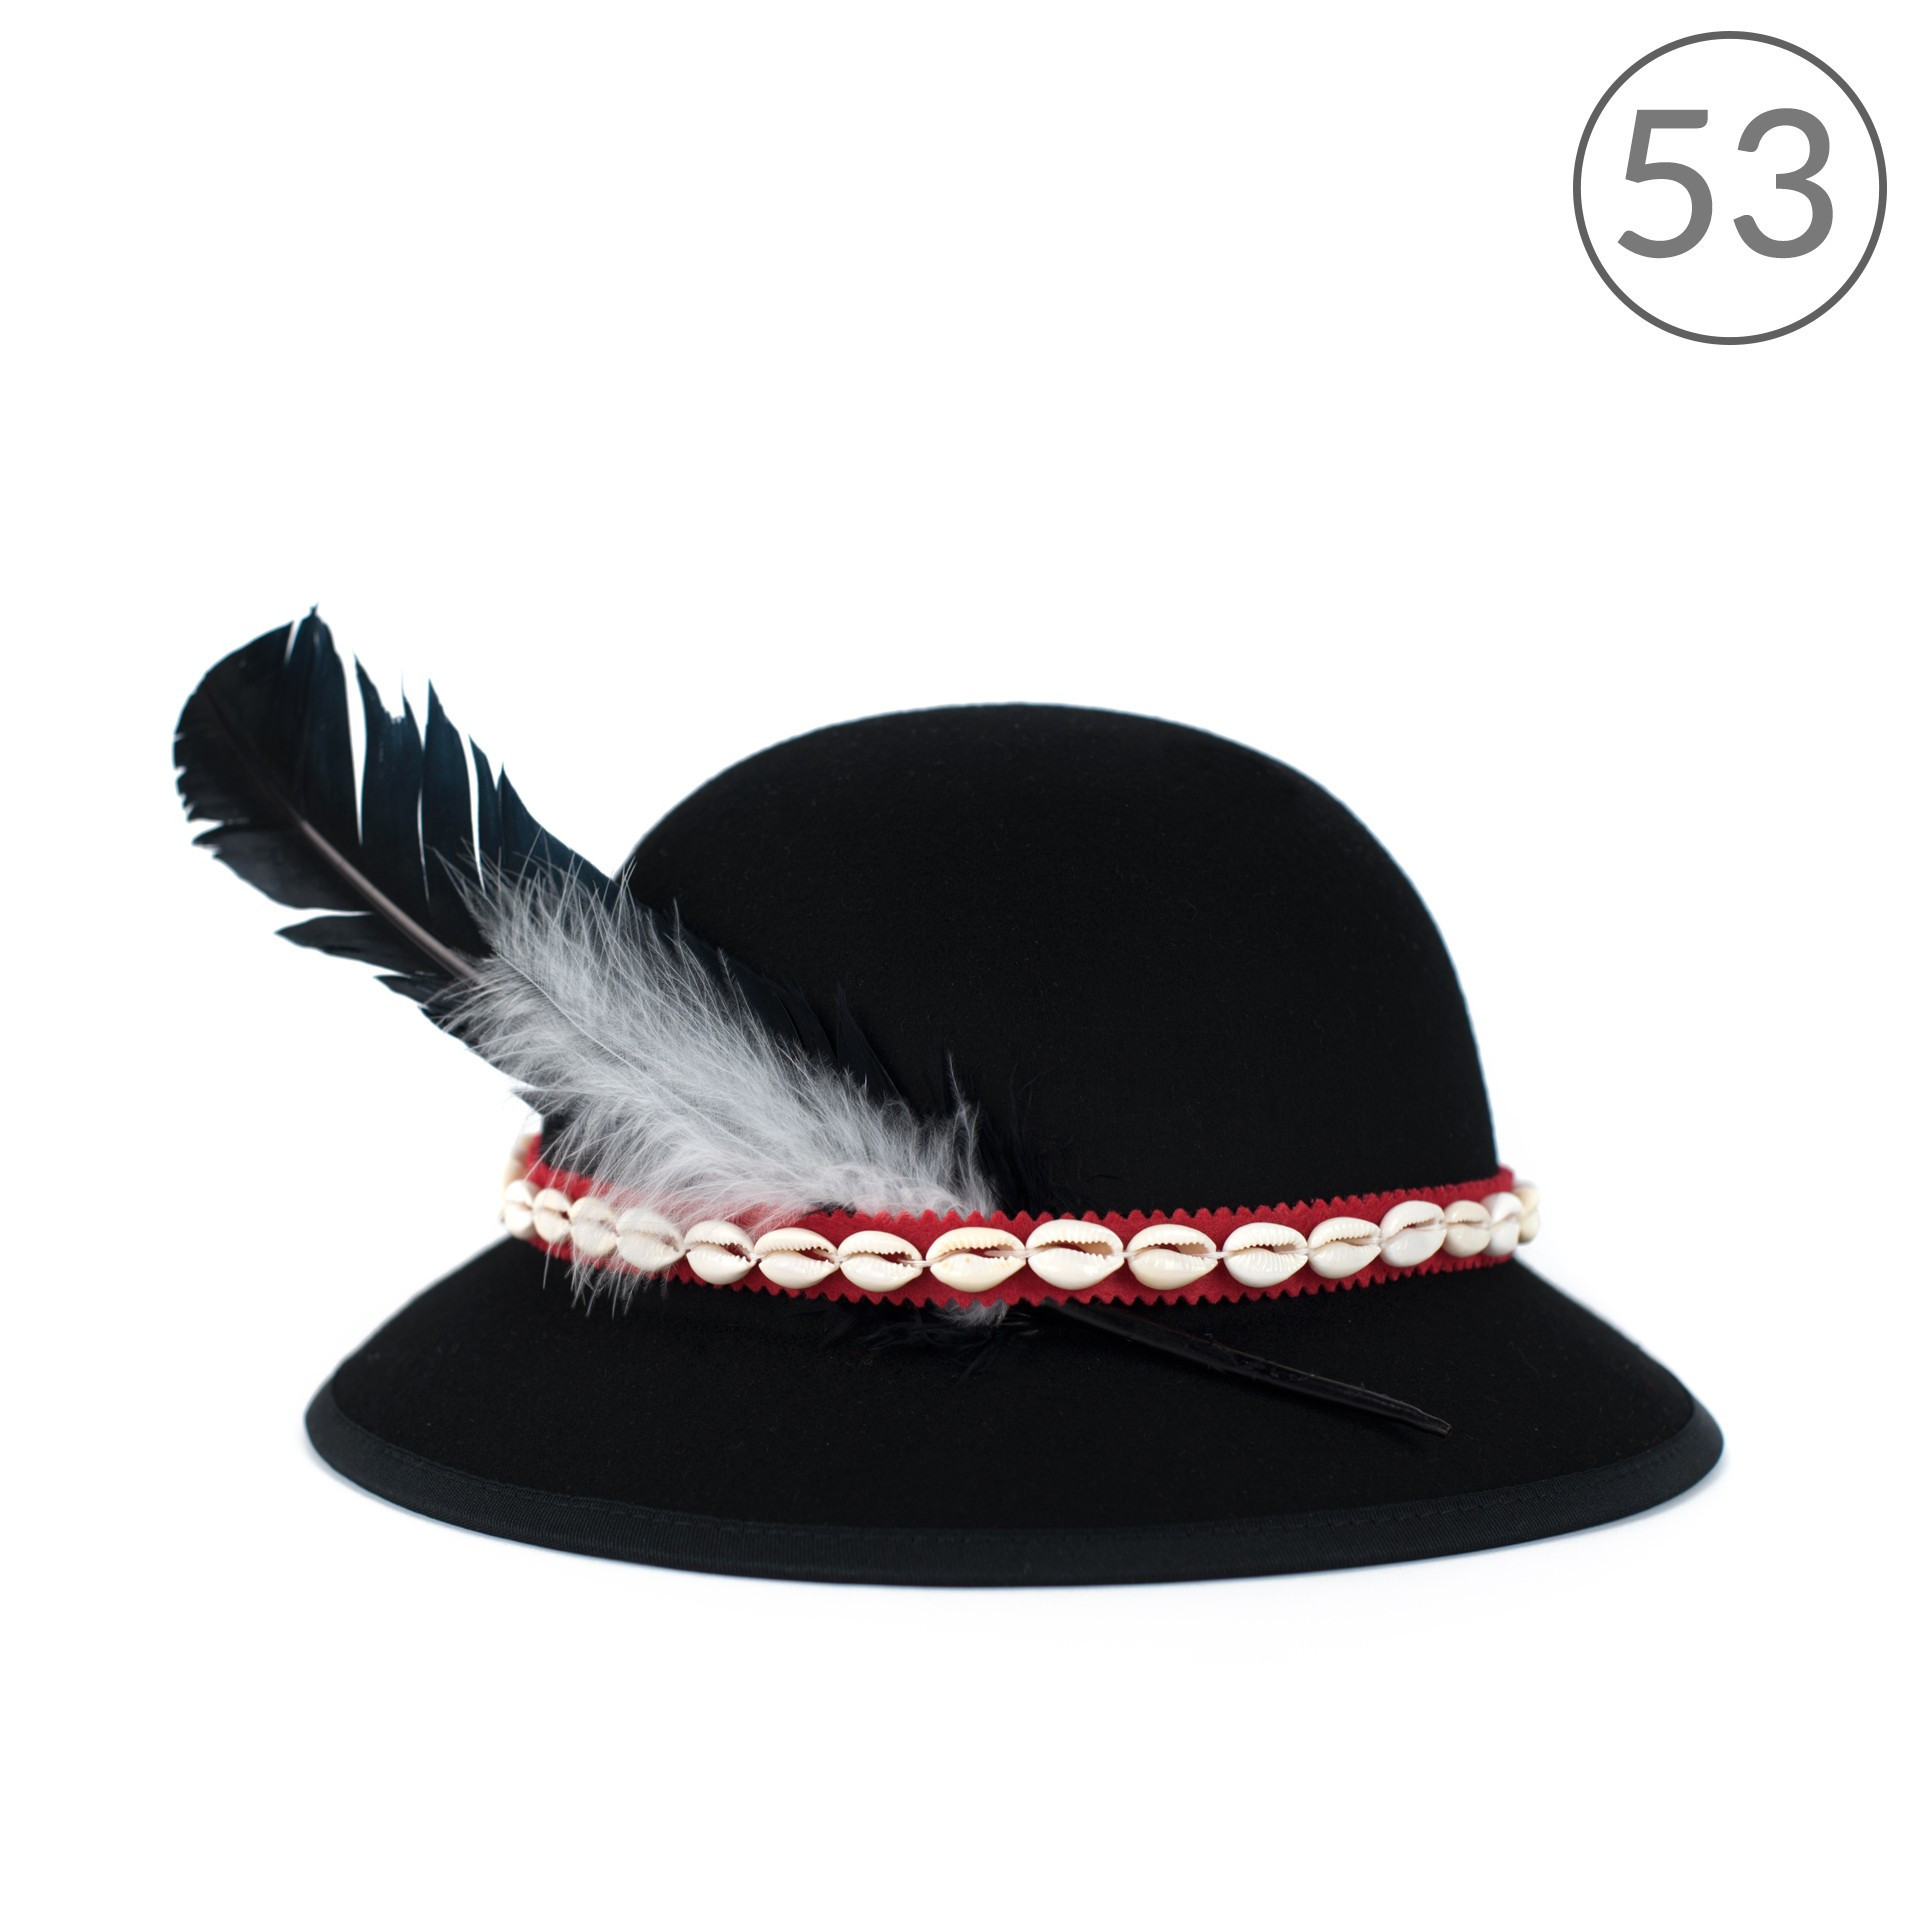 Dámsky klobúk sk16232 čierna - Art of polo 53